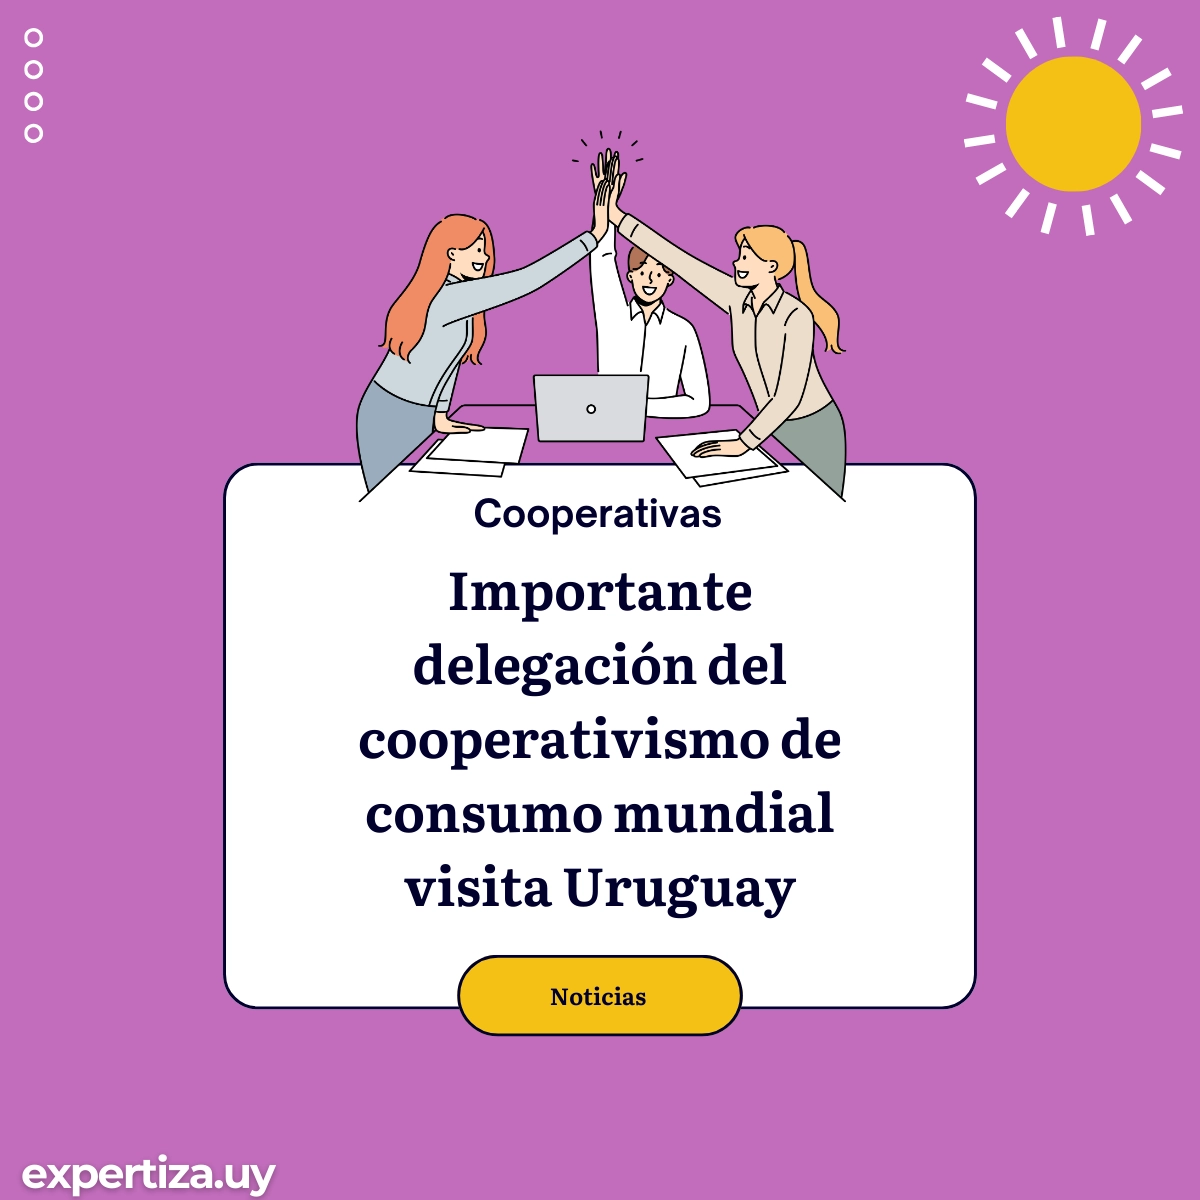 Importante delegación del cooperativismo de consumo mundial visita Uruguay.